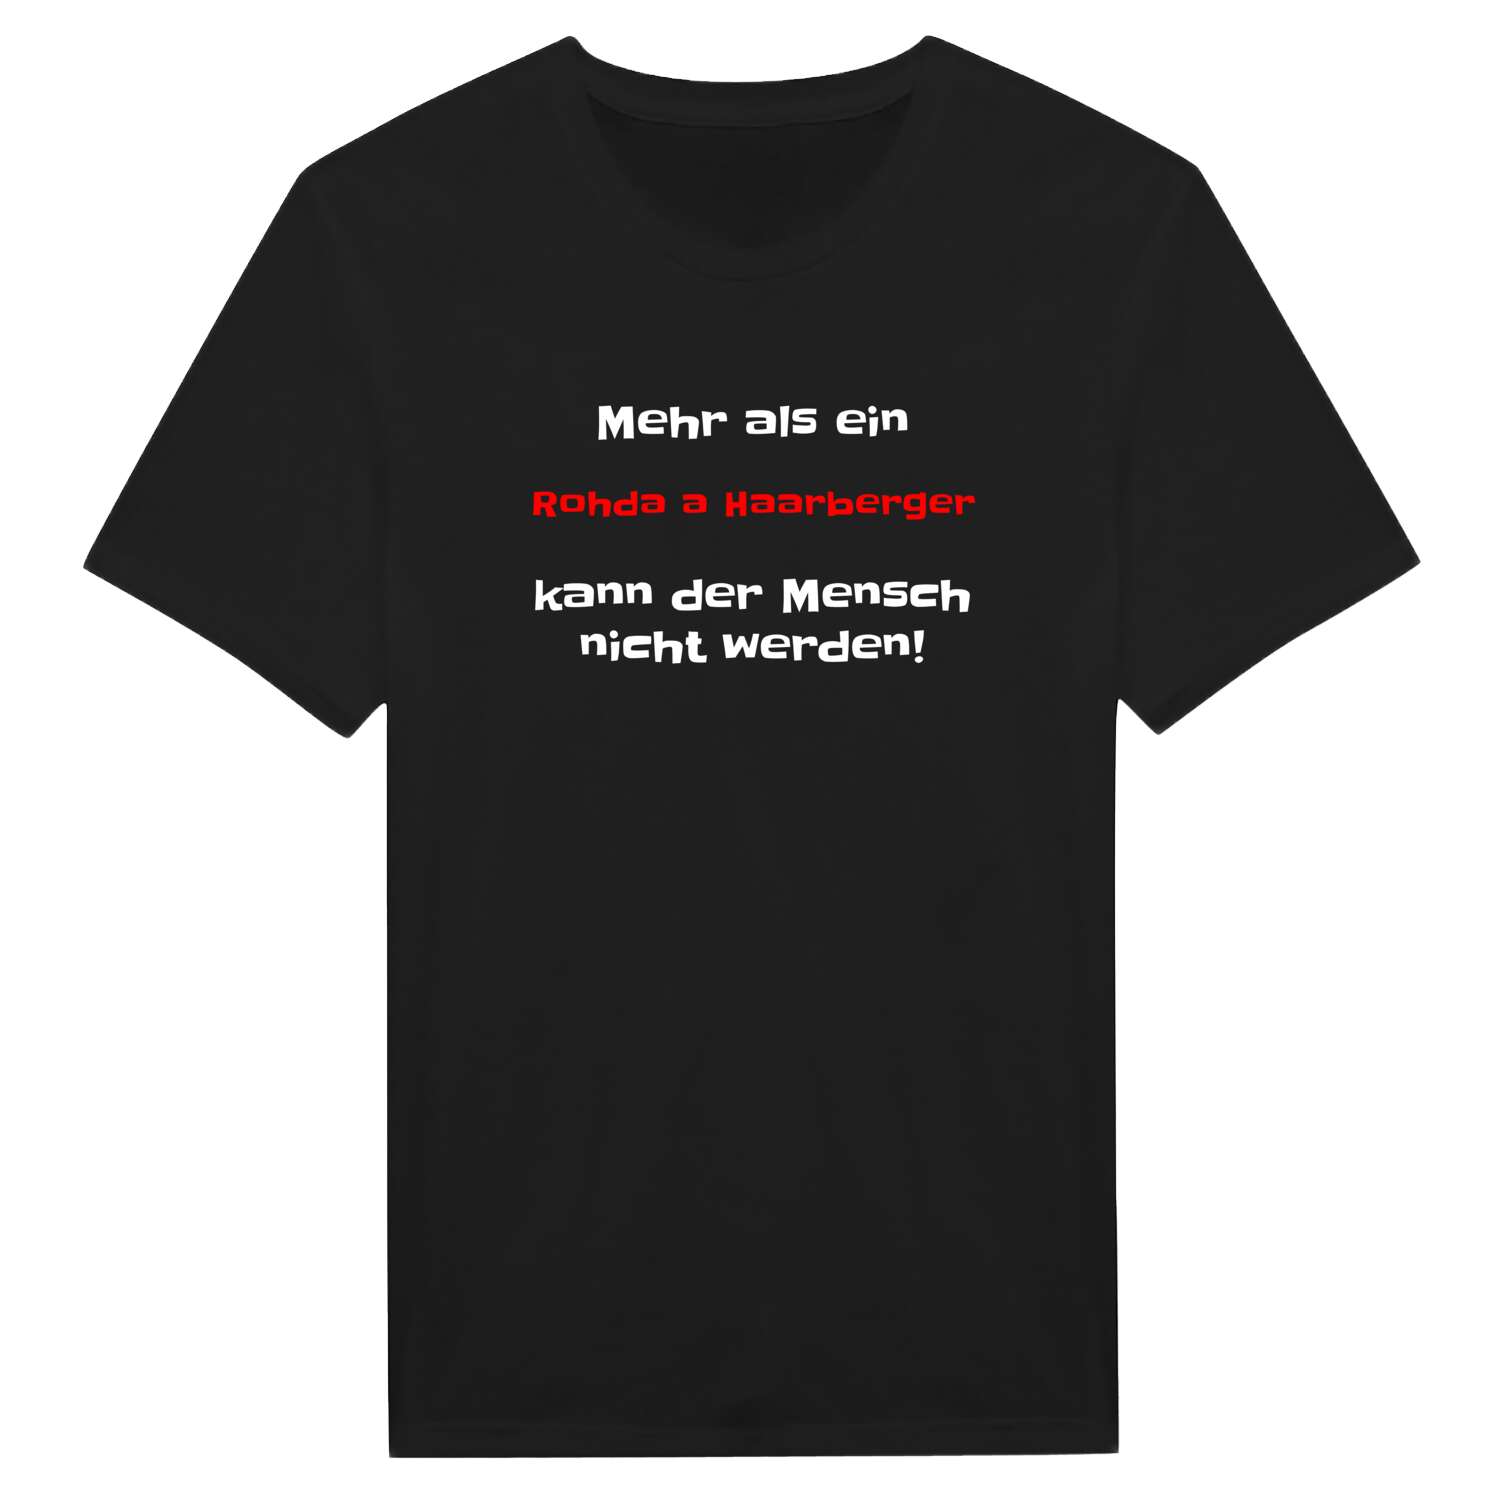 Rohda a Haarberg T-Shirt »Mehr als ein«